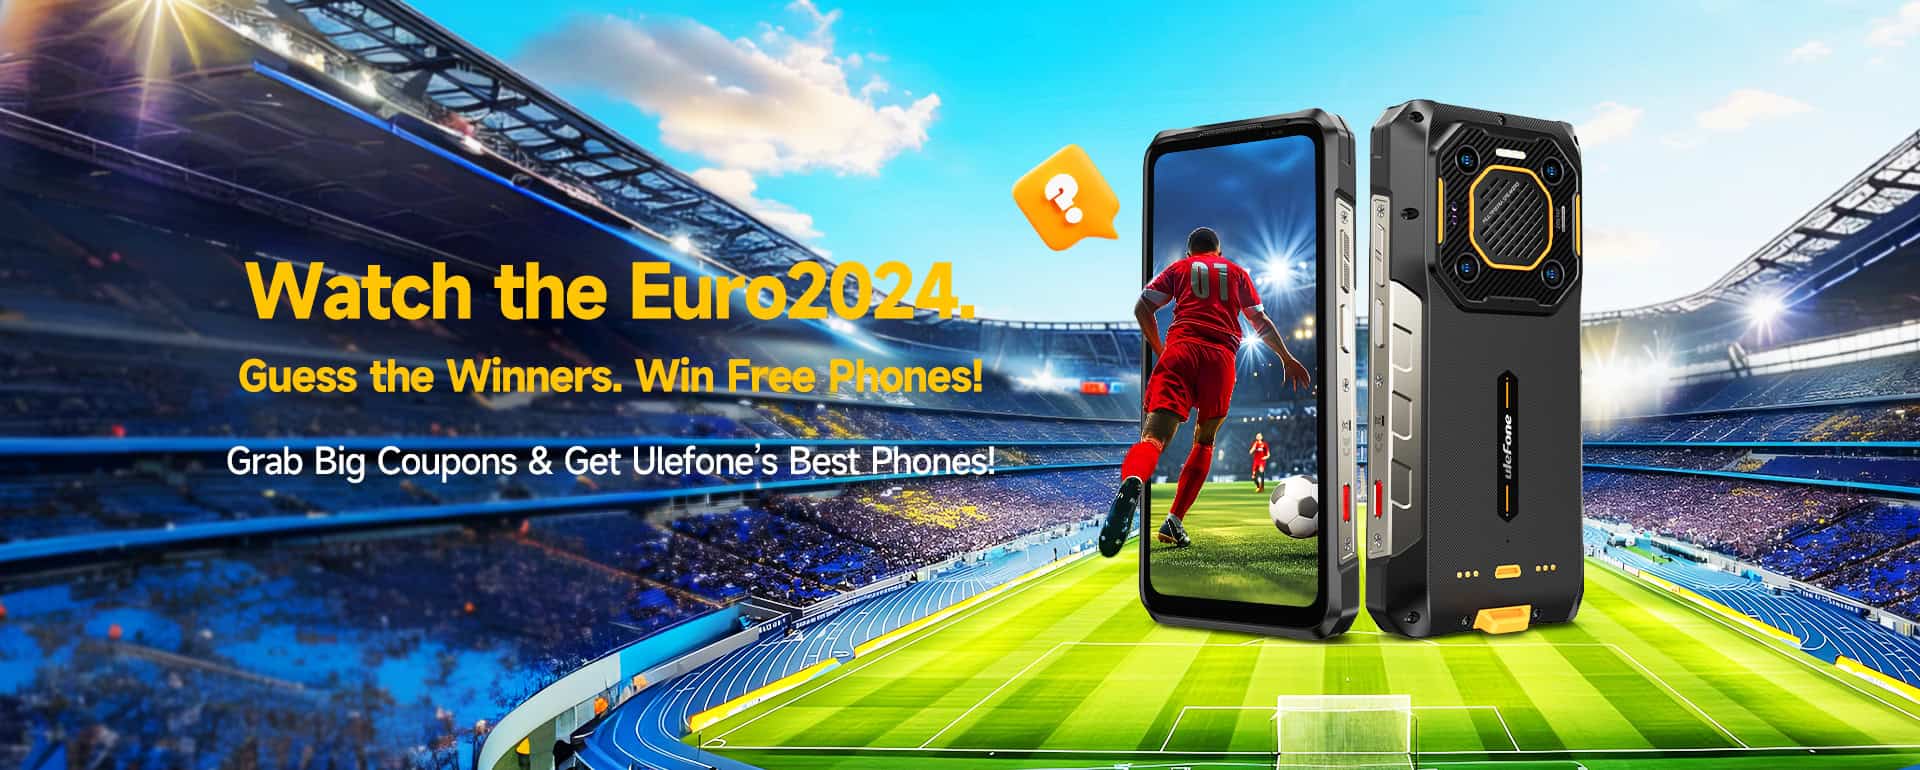 Ulefone celebra la Eurocopa 2024 con un sorteo